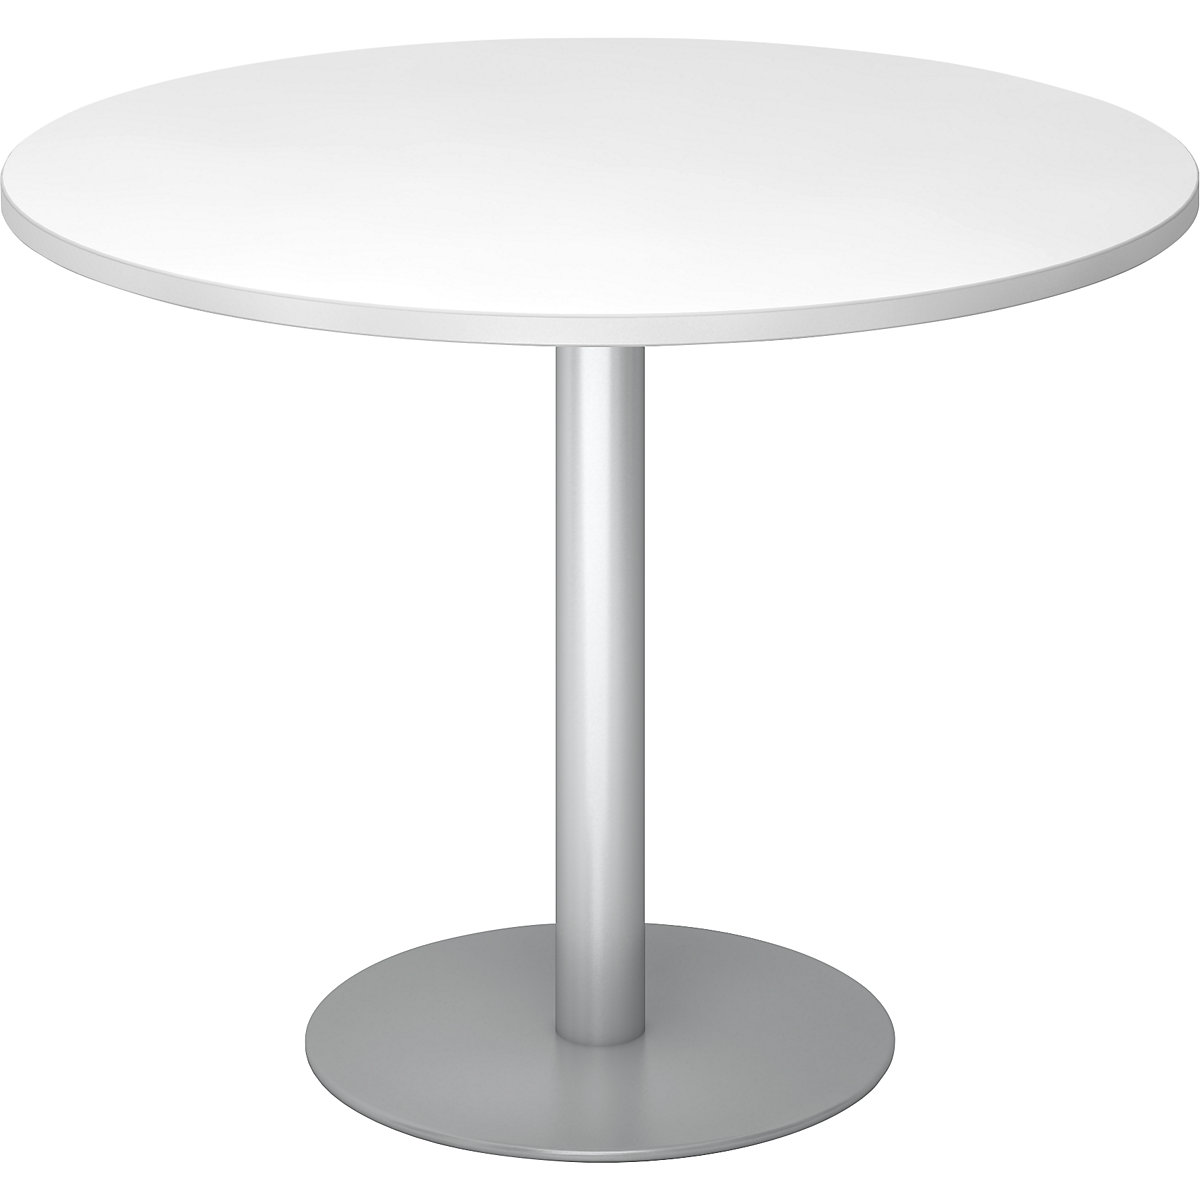 Tárgyalóasztal, Ø 1000 mm, 755 mm magas, ezüst váz, fehér asztallap